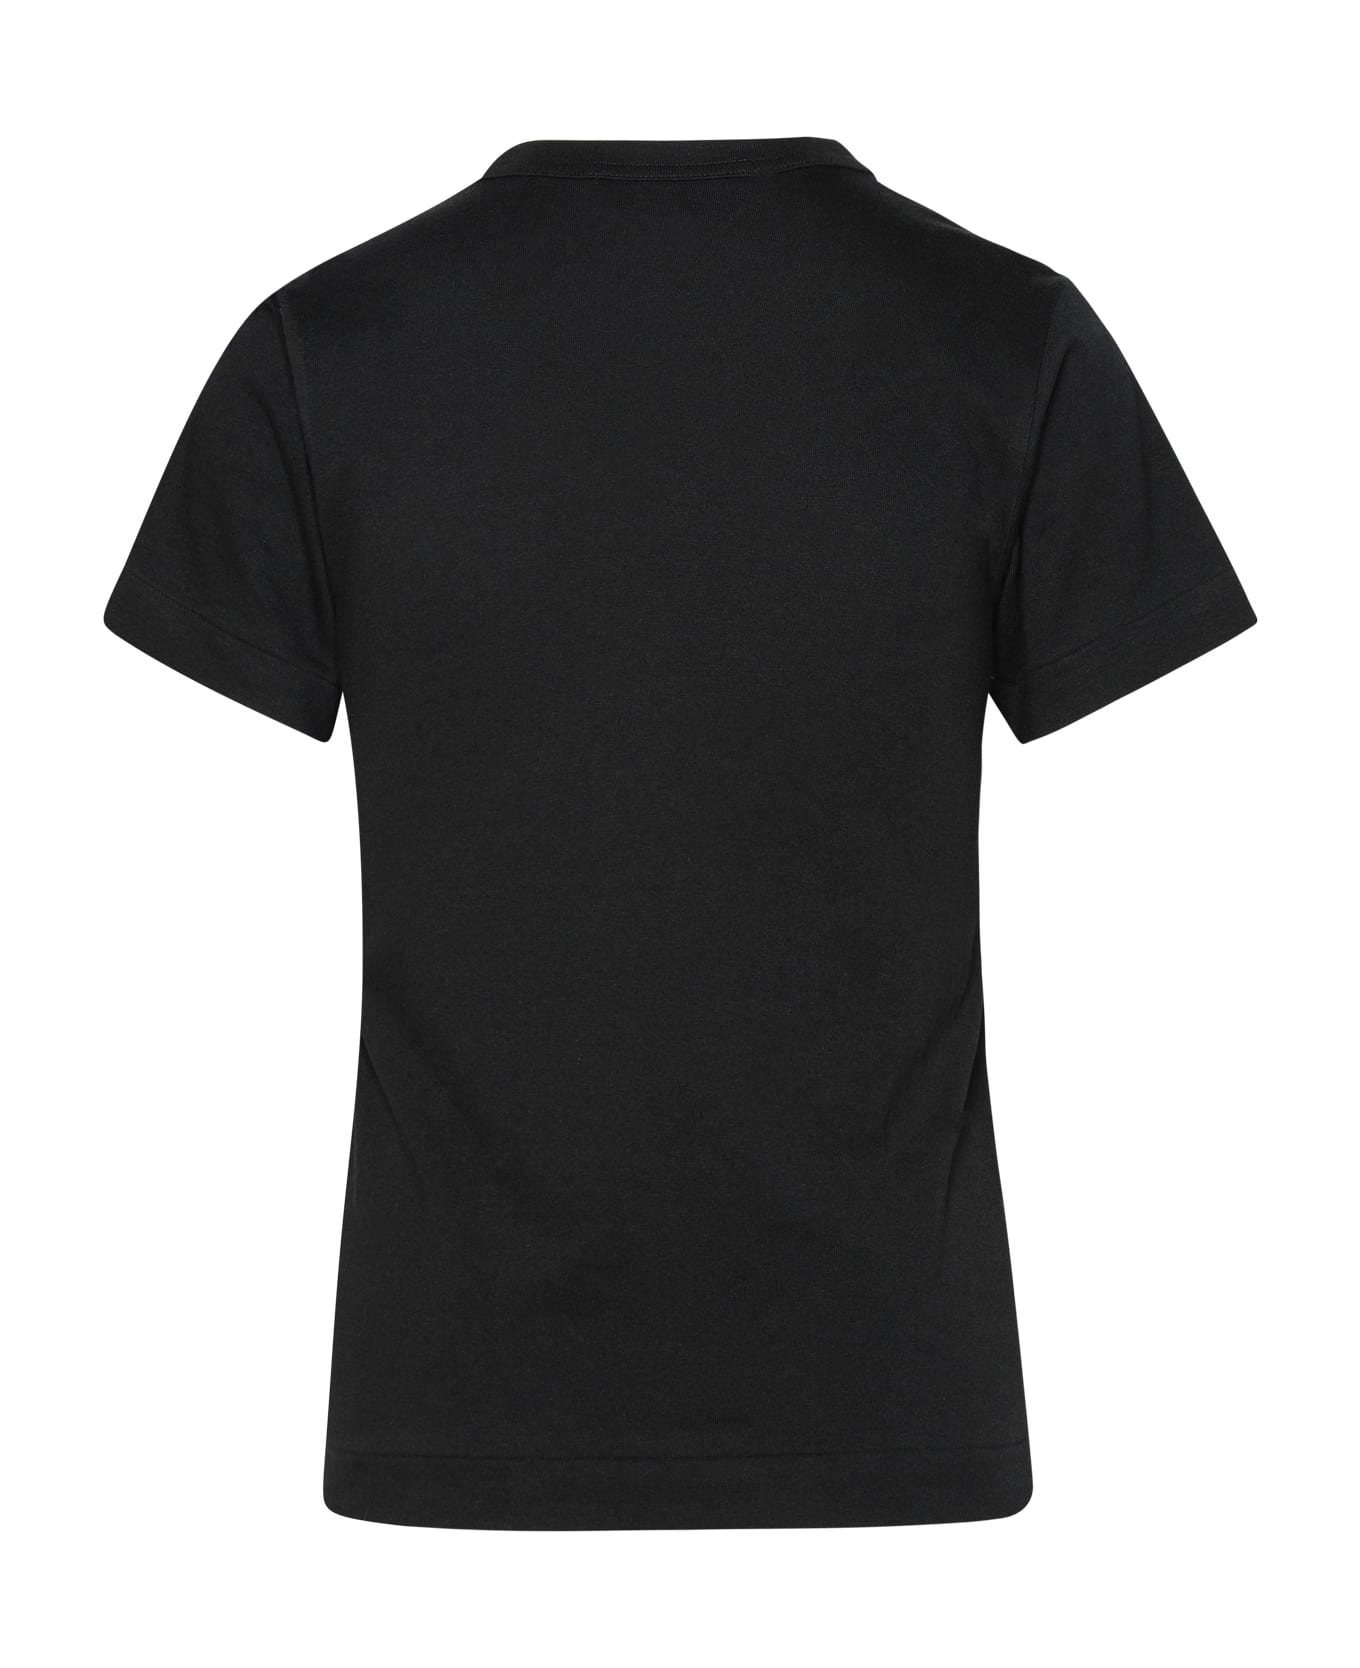 Comme des Garçons Play Black Cotton T-shirt - Black